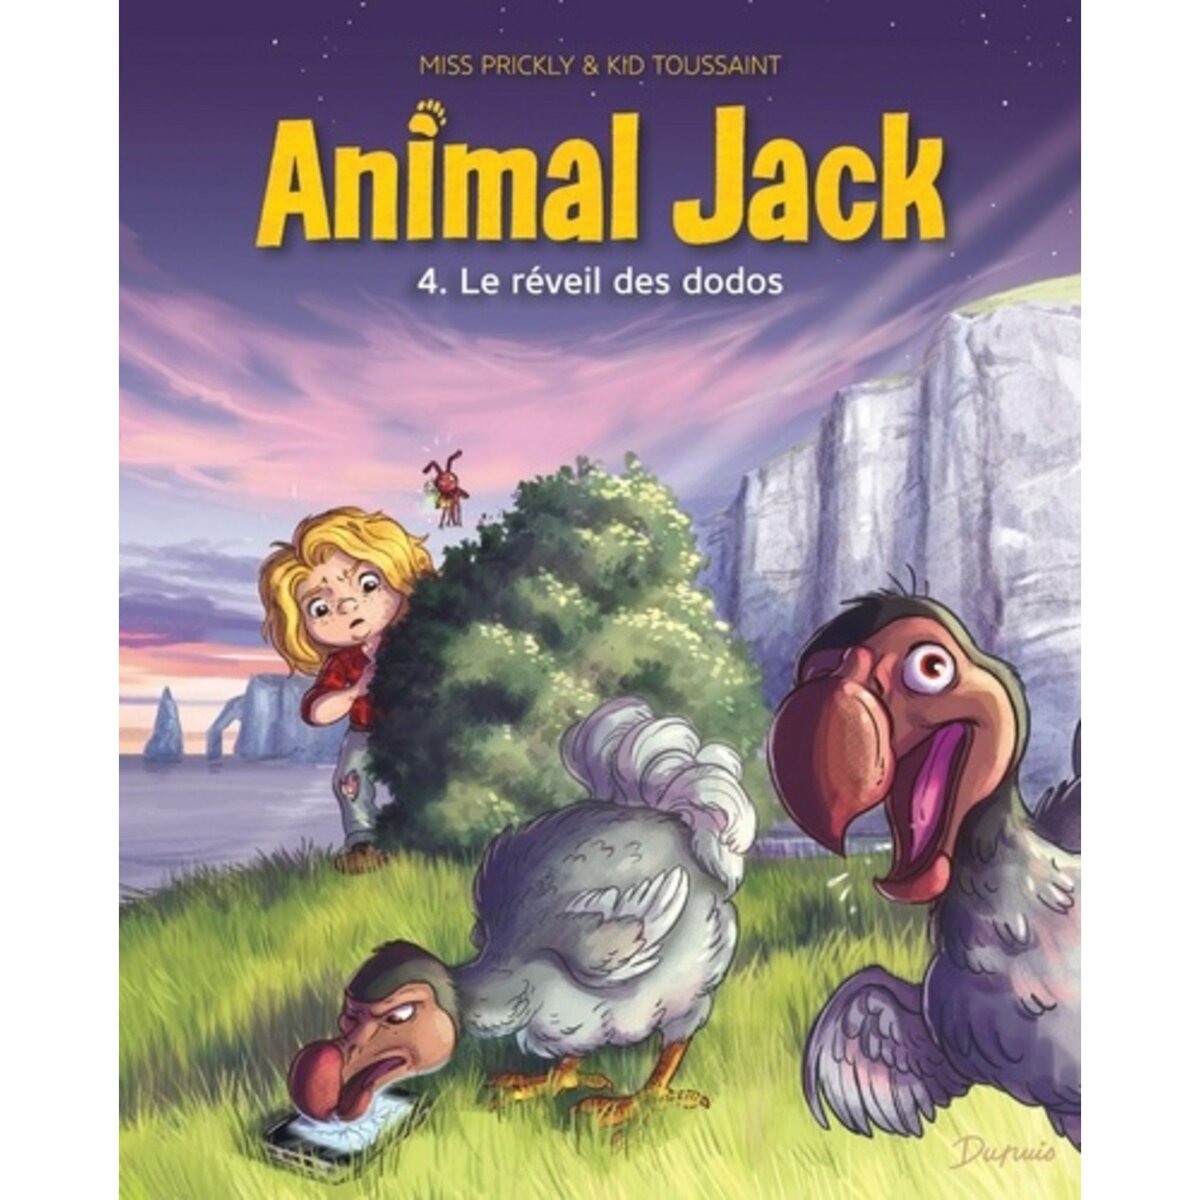  ANIMAL JACK TOME 4 : LE REVEIL DES DODOS, Toussaint Kid